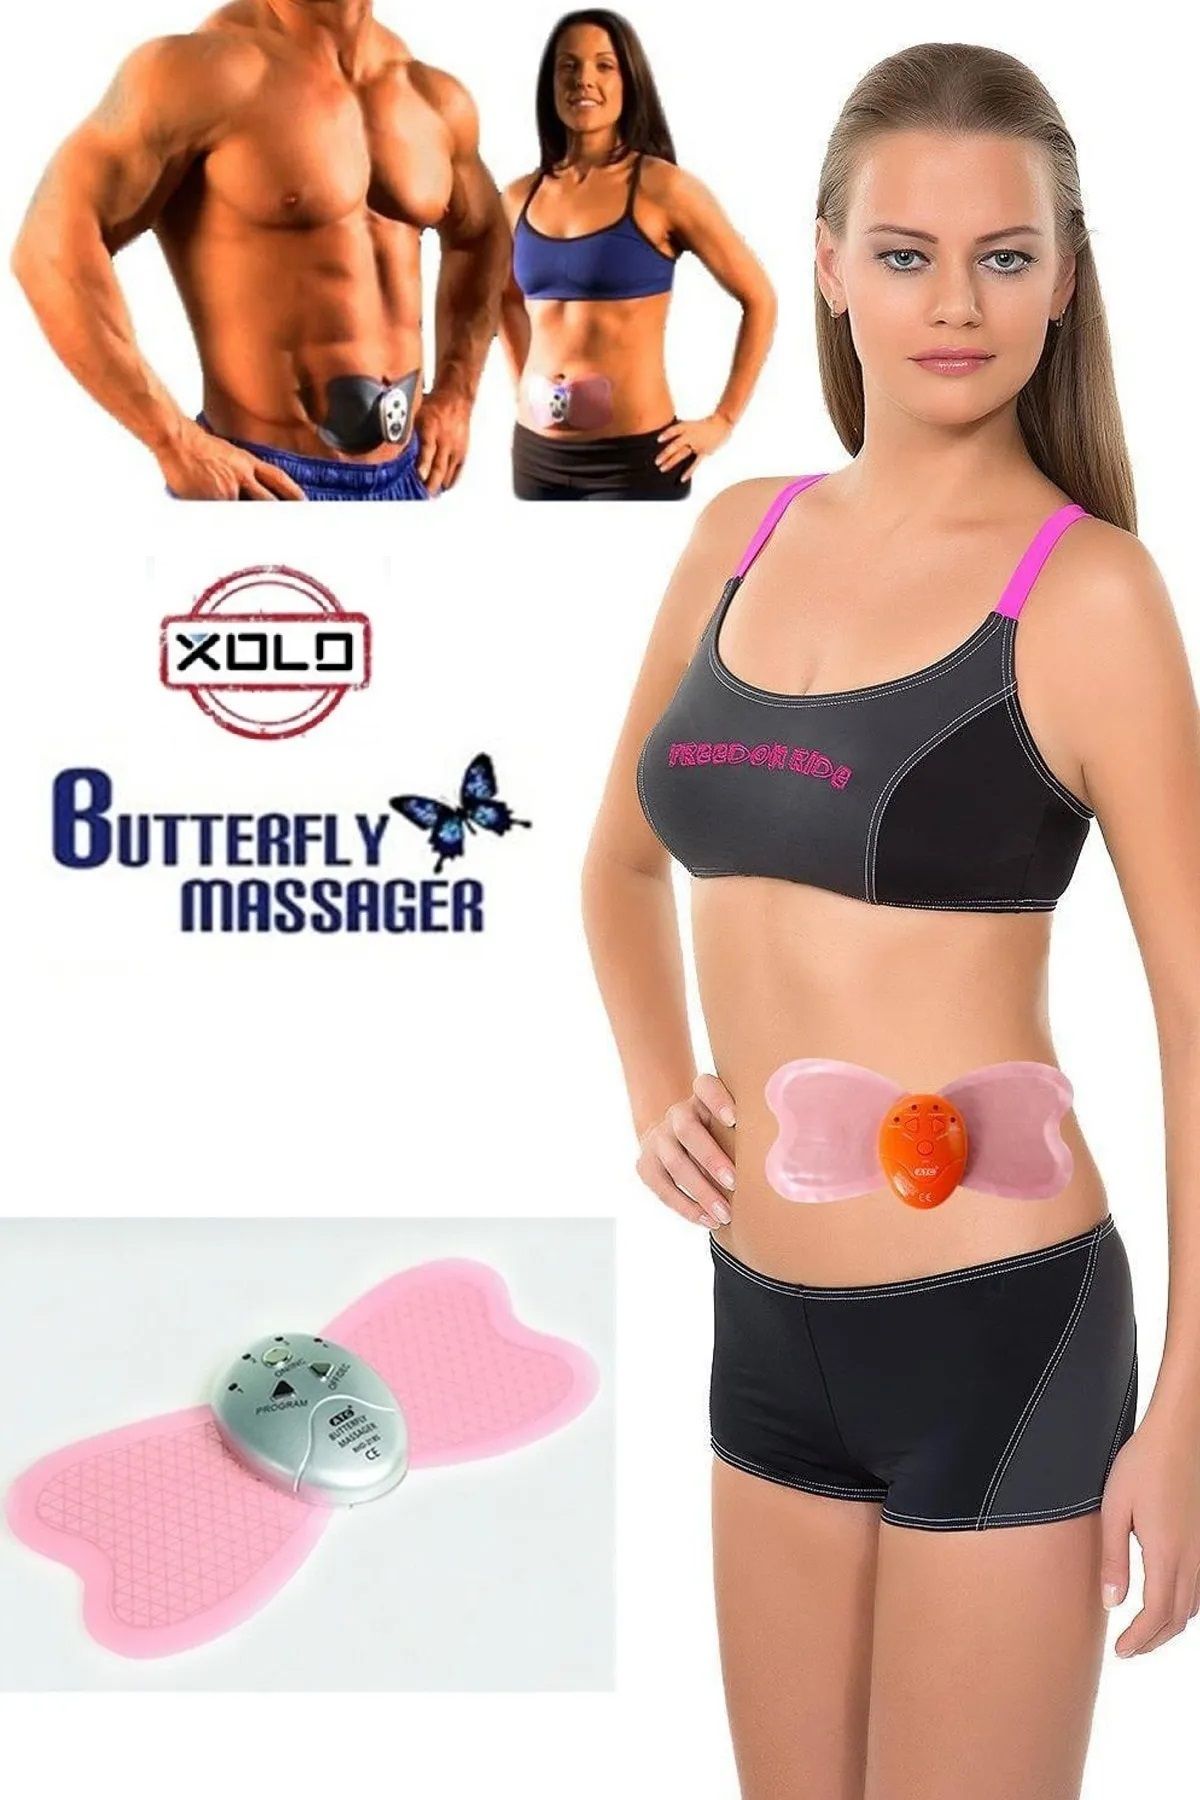 Xolo Büyük Boy Butterfly ABS Yeni Nesil Karın Kası Çalıştırıcı Vücut Egzersiz ve Masaj Aleti